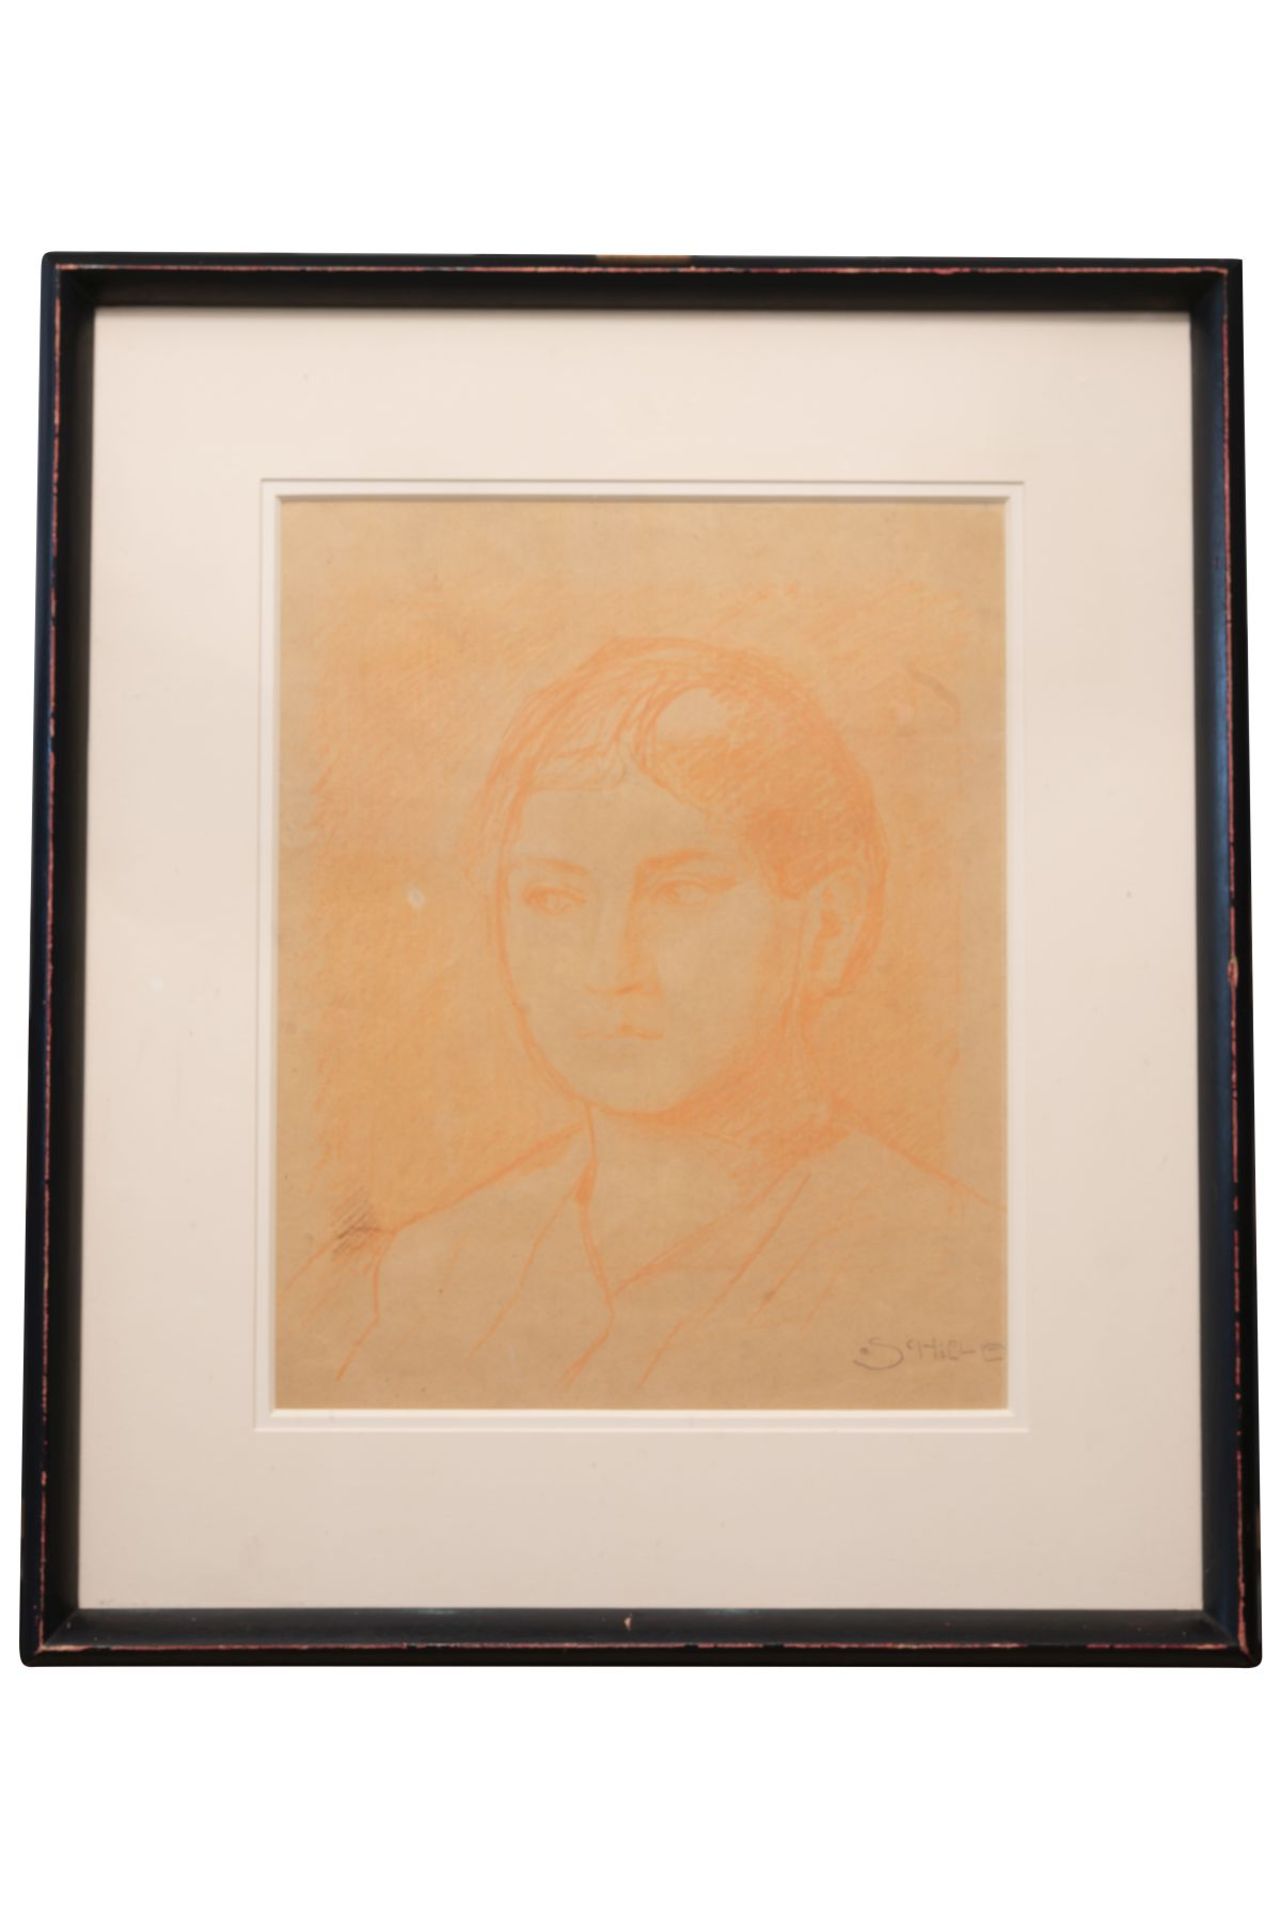 Egon Schiele "Rötelzeichnung" "Frauenporträt" signiert "Schiele" unten rechts, Rötelzeichnung auf - Image 2 of 3